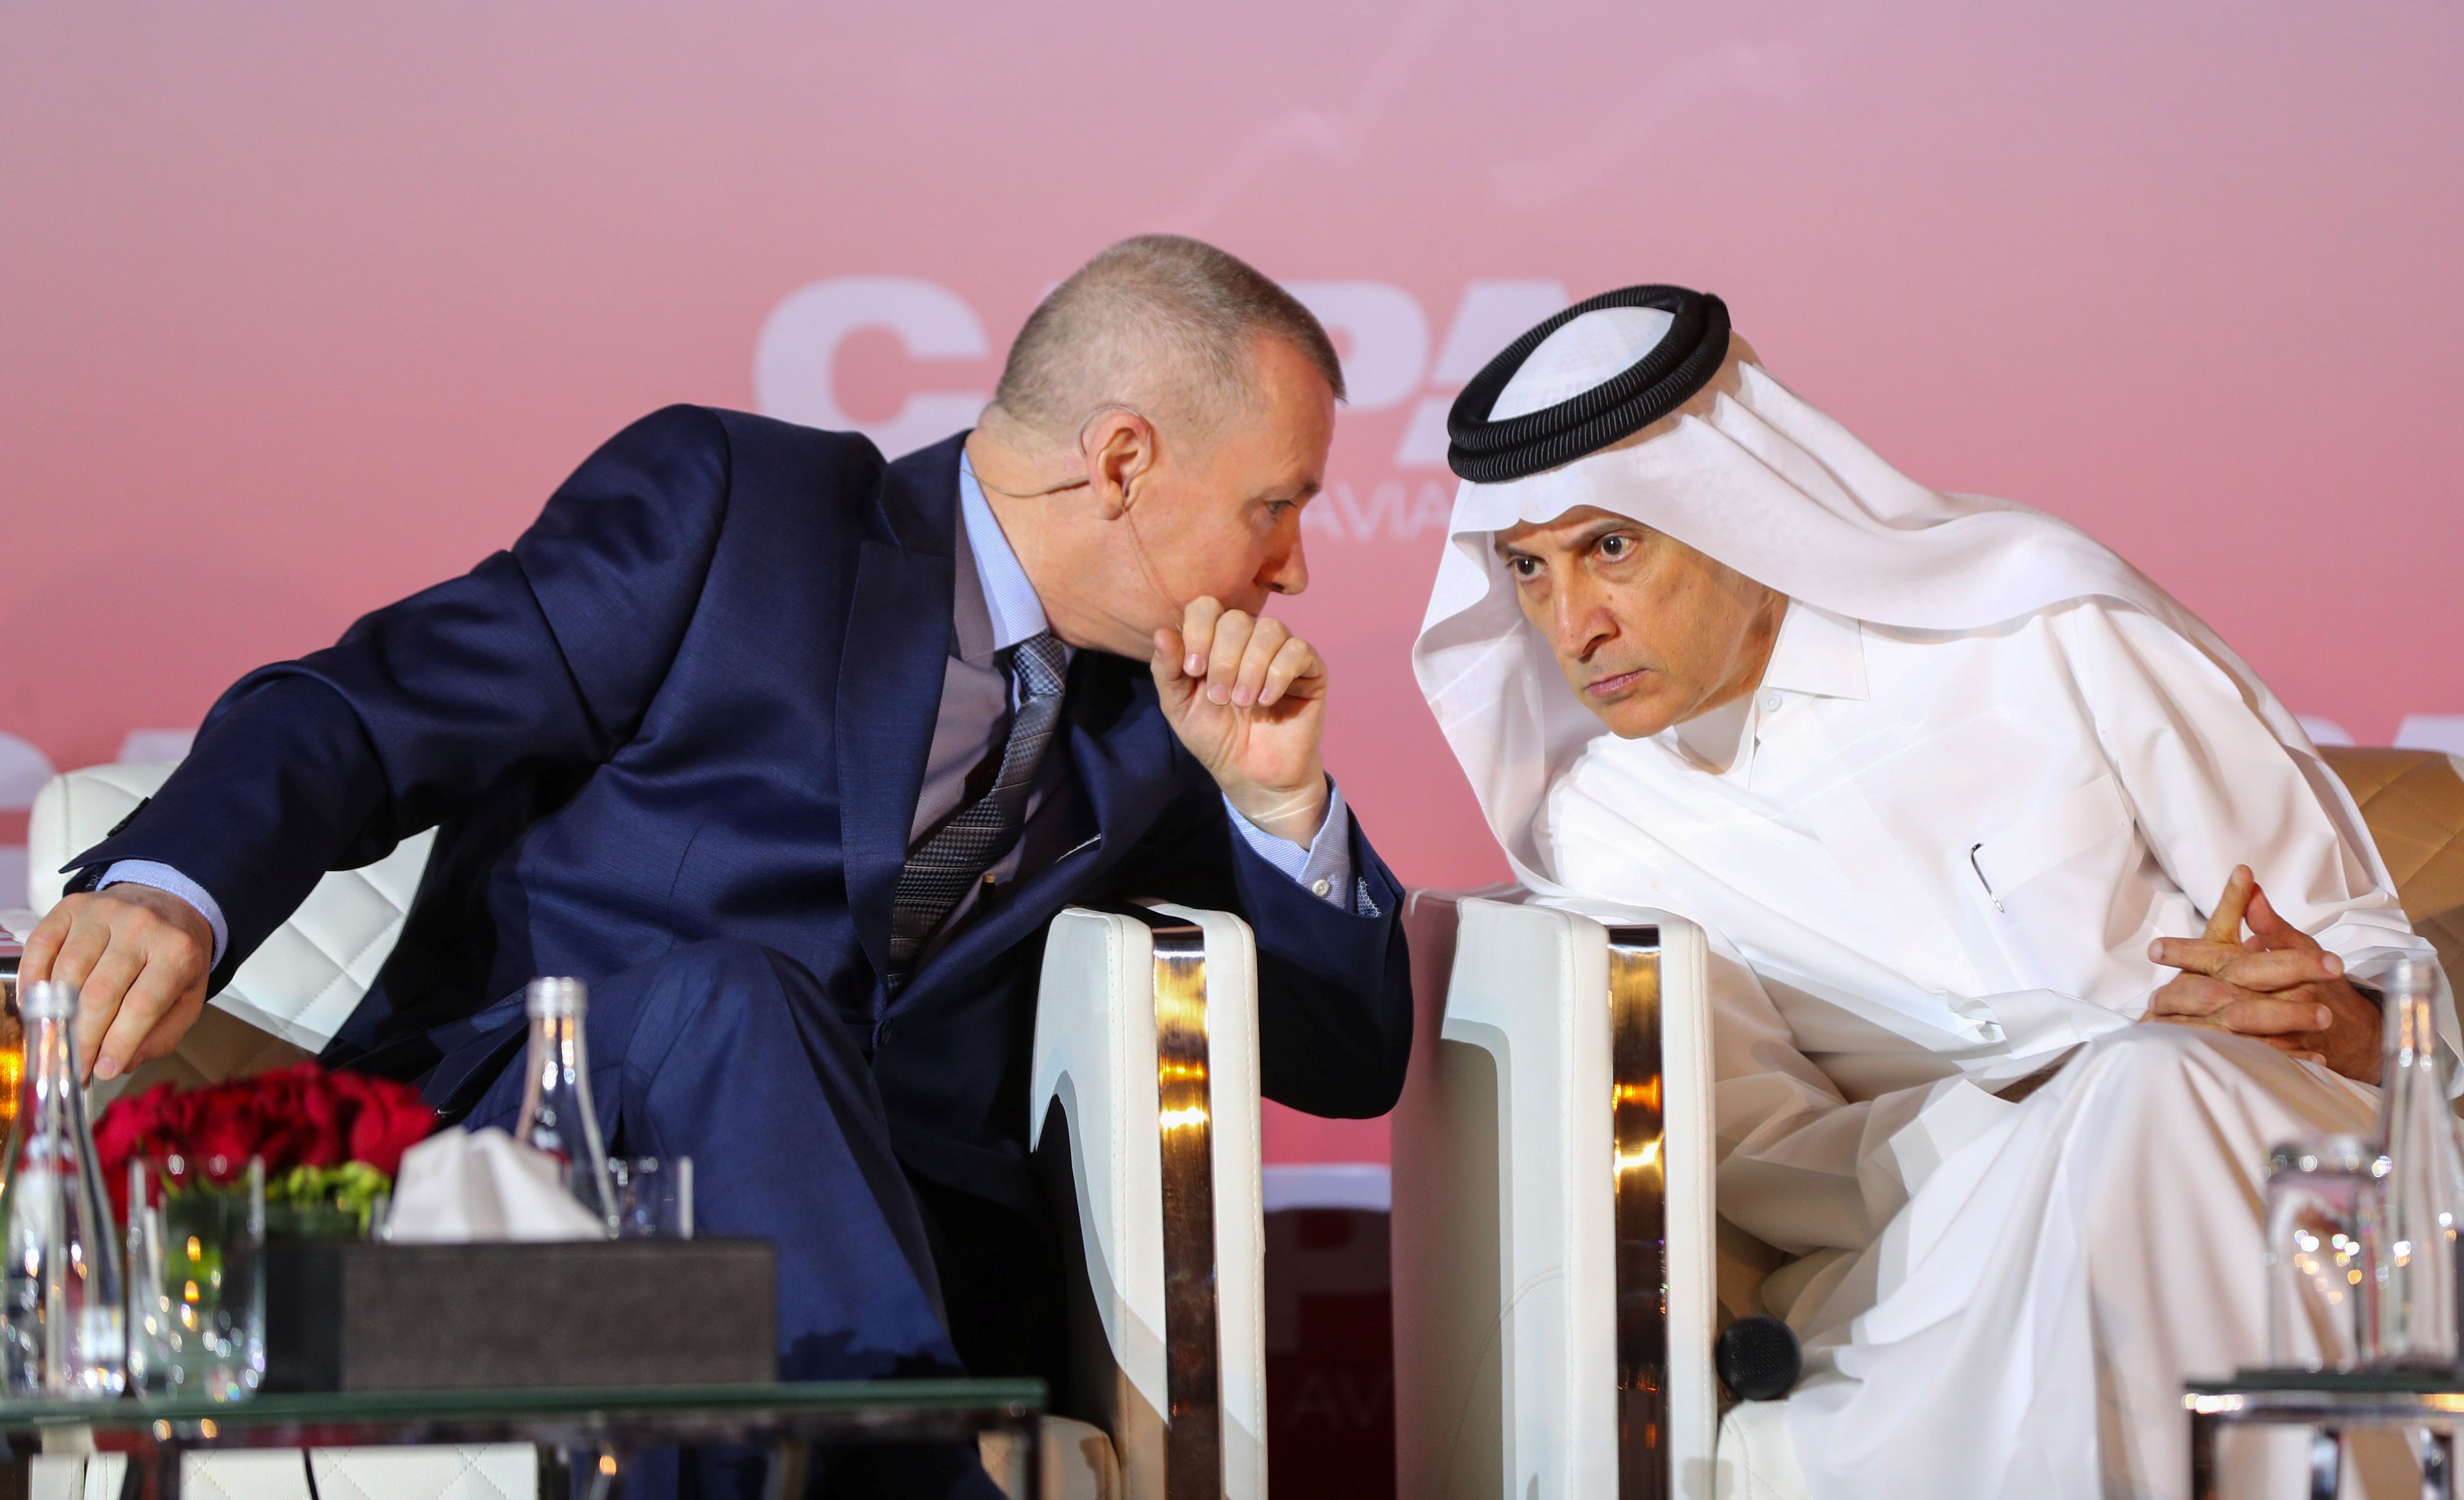 El ex director ejecutivo de IAG, Willie Walsh, junto con el CEO de Qatar Airways, Akbar Al Baker, en un evento en Qatar.